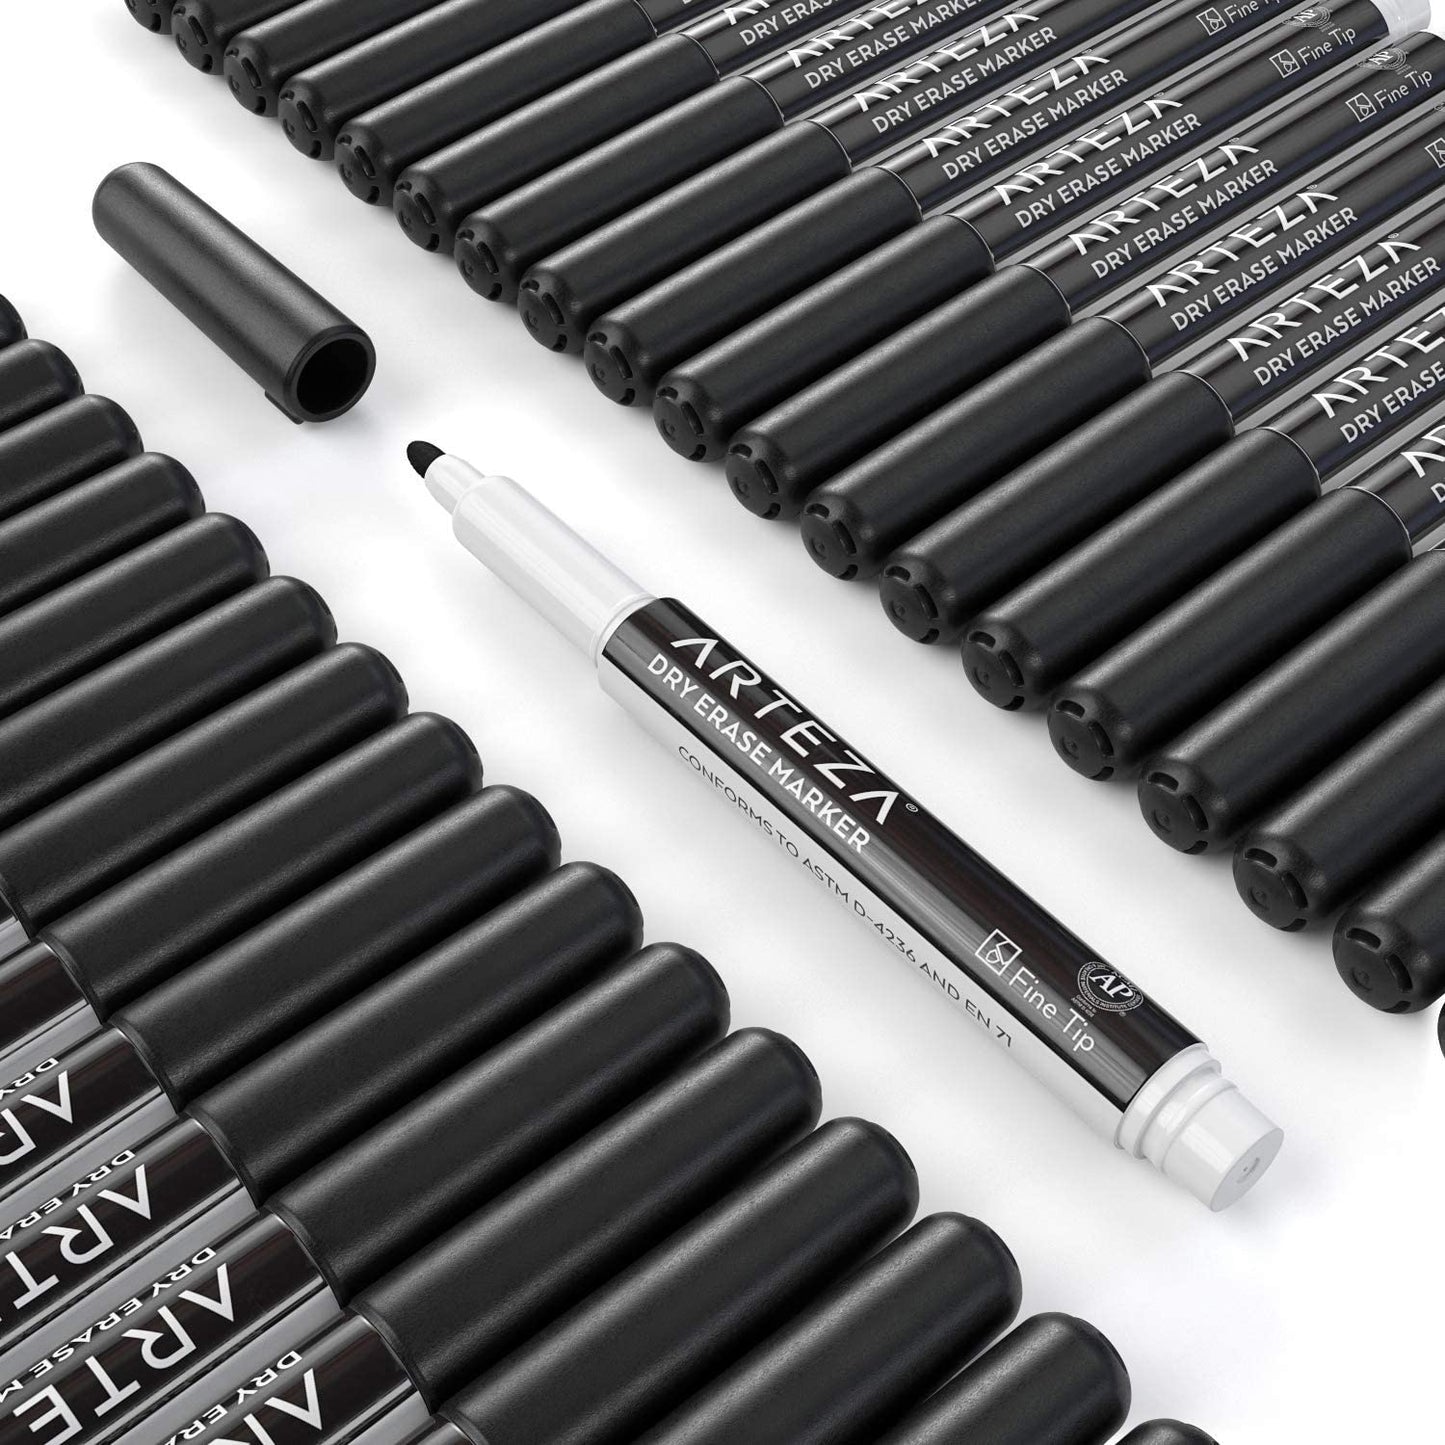 Dry Erase Markers, Black, Fine Tip - Pack of 52